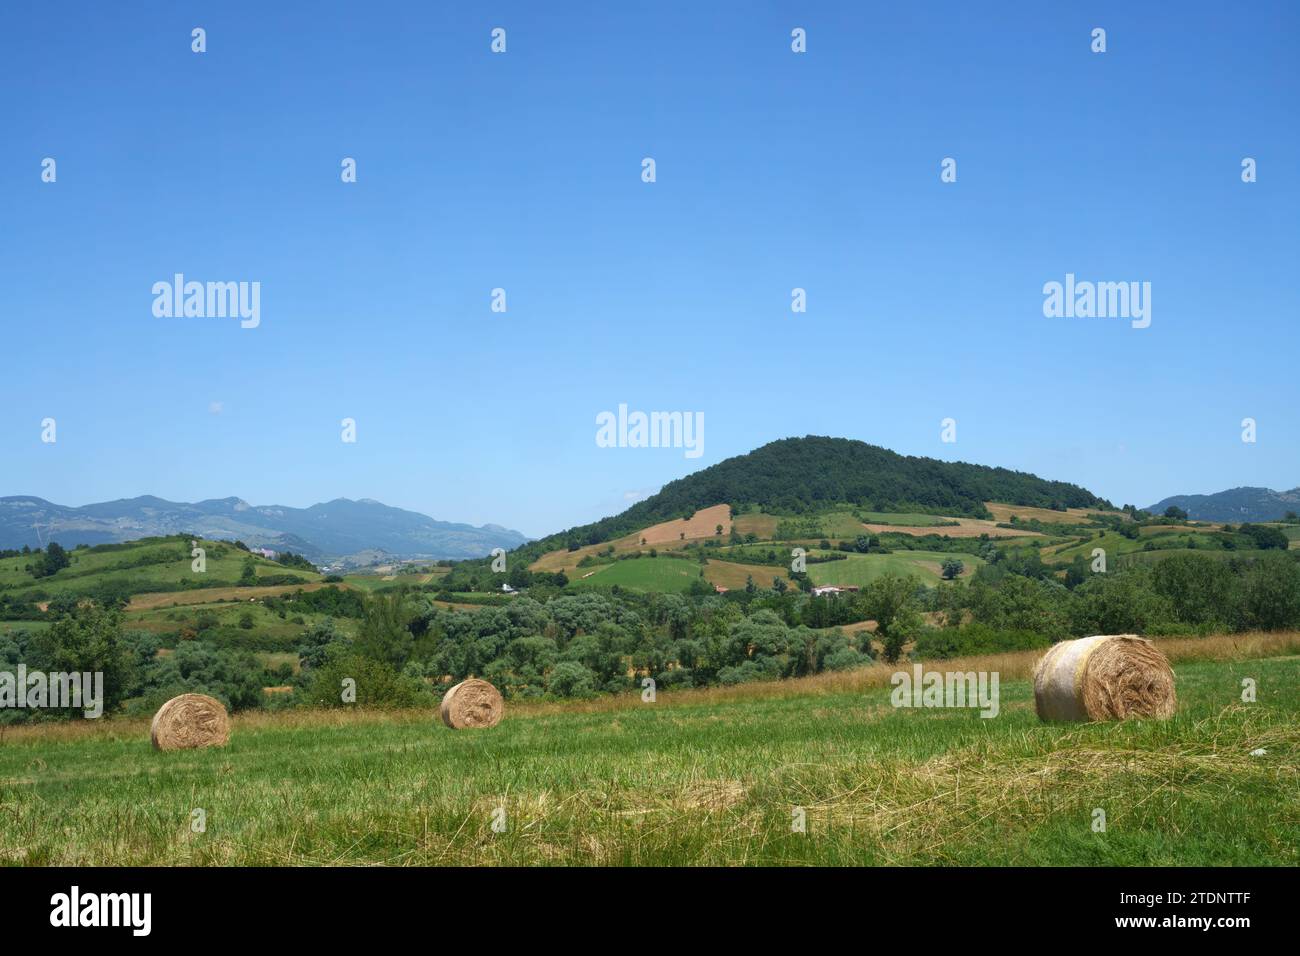 Paesaggio rurale in Abruzzo vicino Castel di Sangro, provincia di L Aquila, Italia, in estate Foto Stock